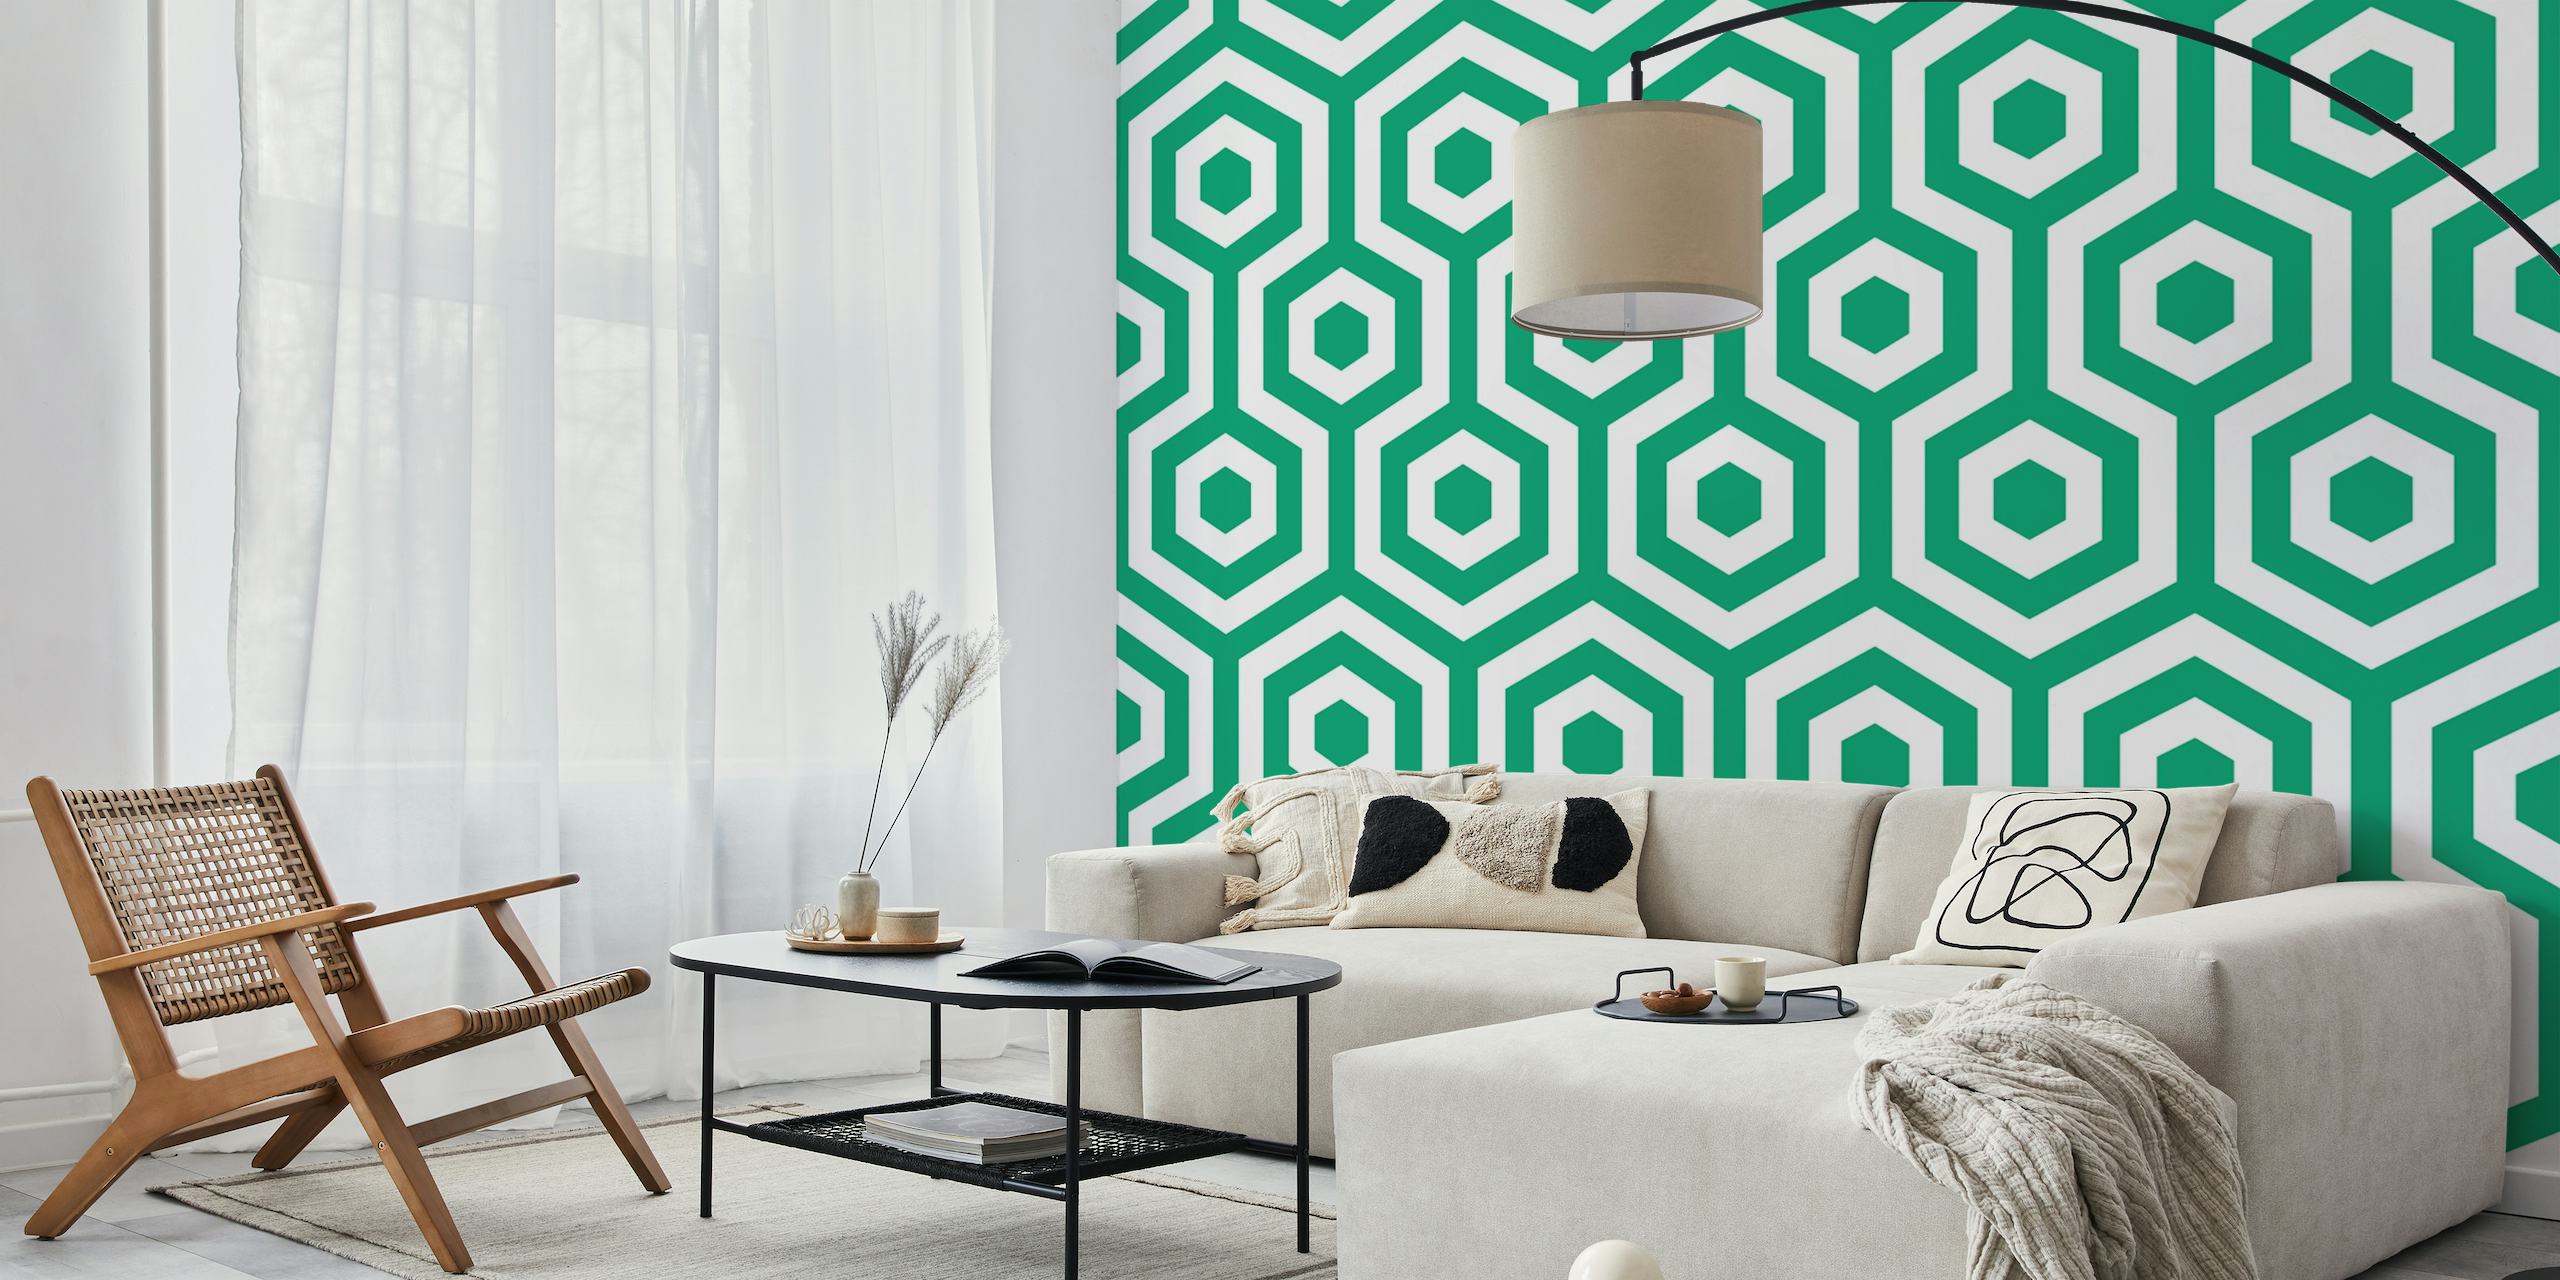 Grass green hexagon pattern wallpaper